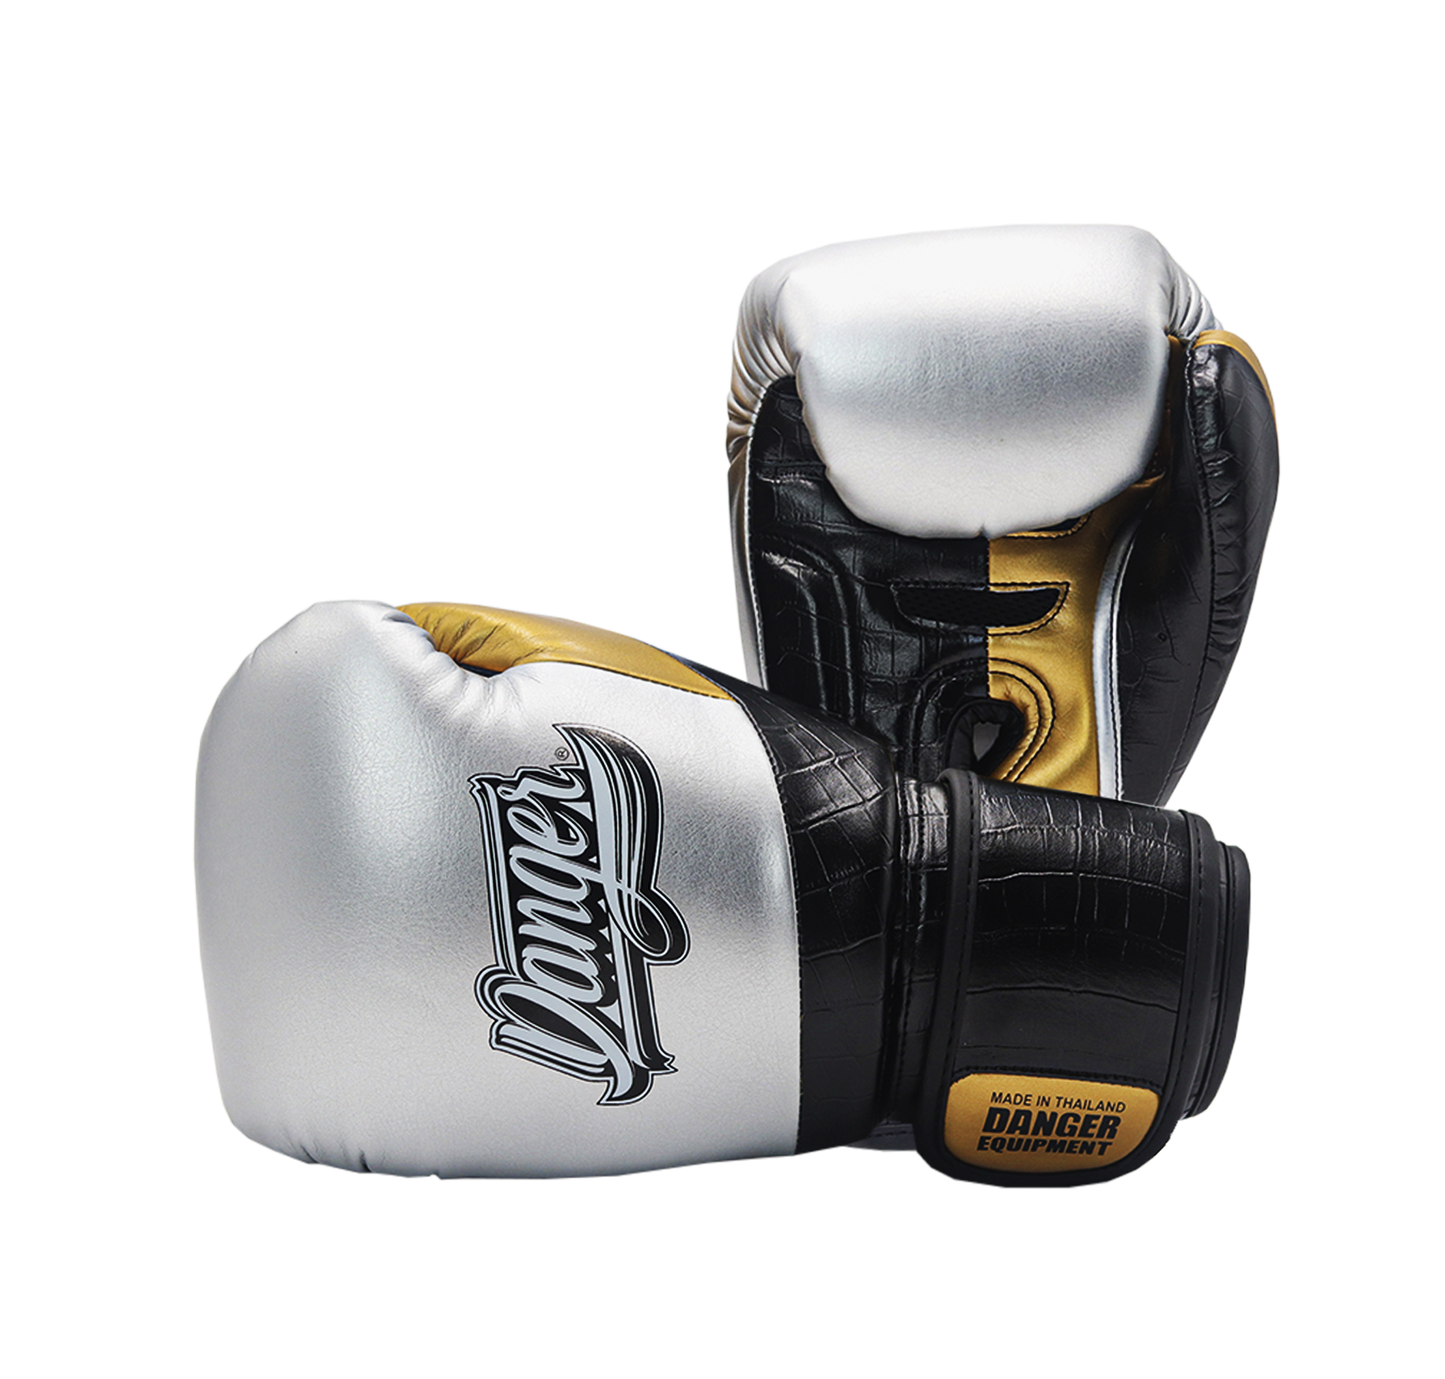 DANGER Boxing Gloves Evo 3.0 Silver/Black Crocodile/Gold